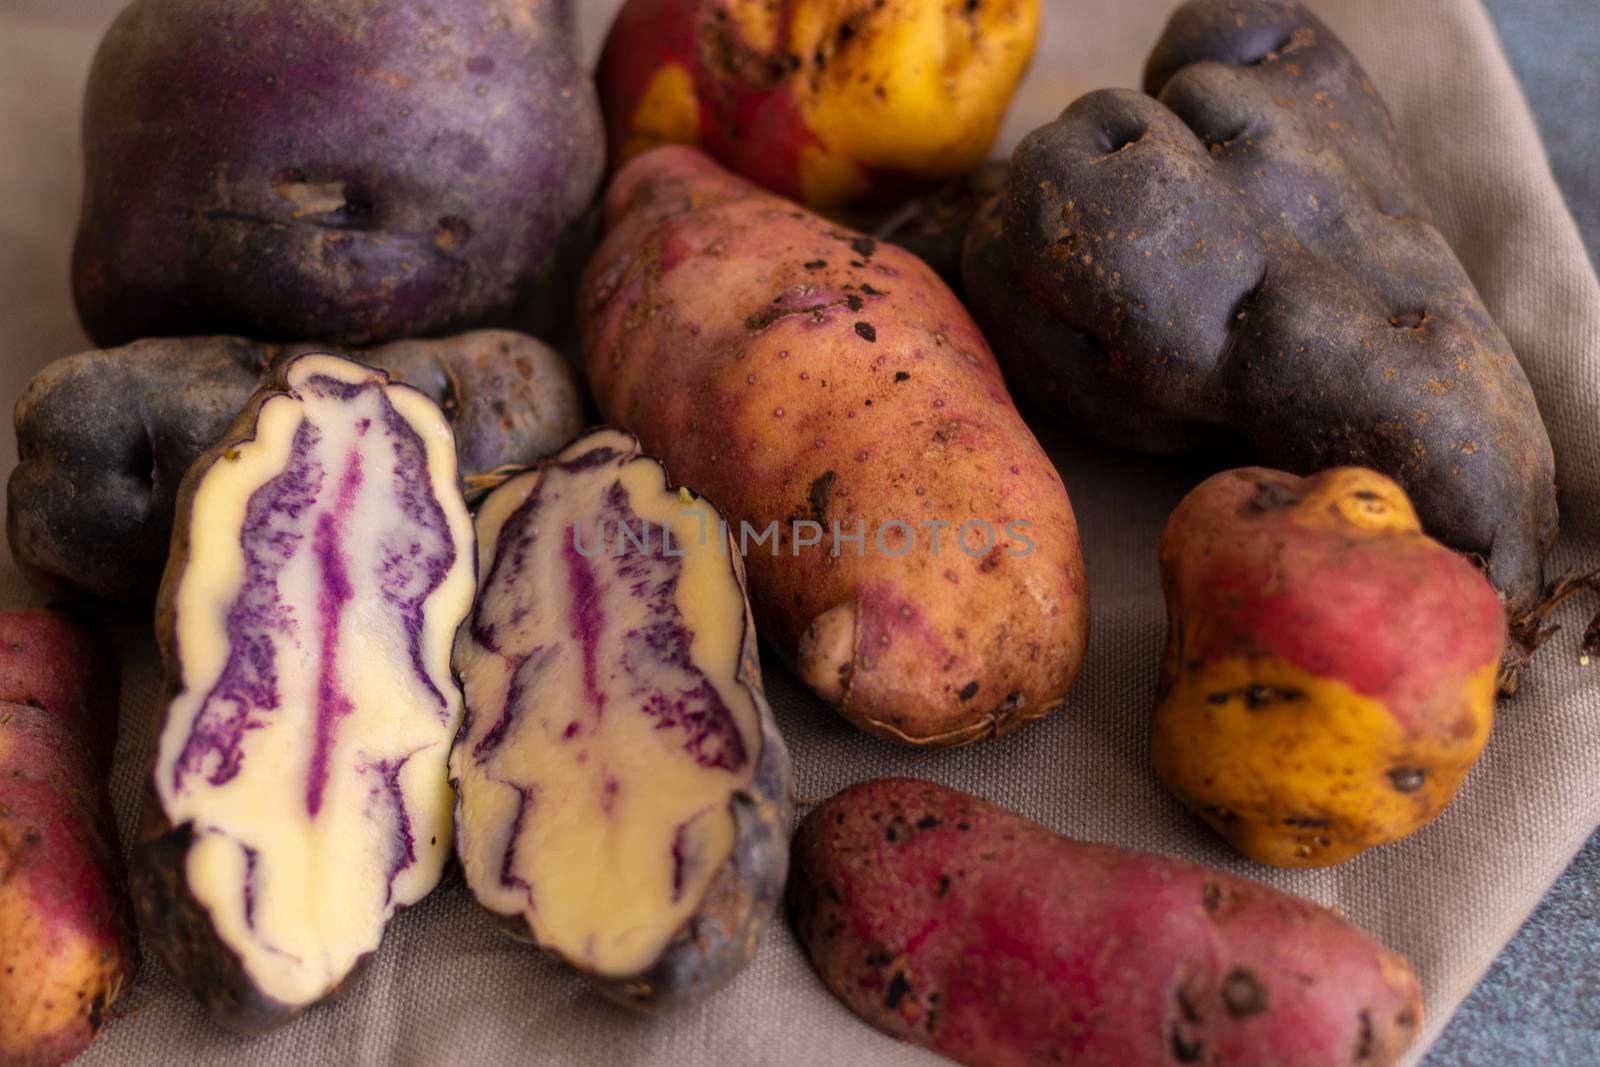 Peruvian native potatoes, harvested in Cusco, Peru by eagg13